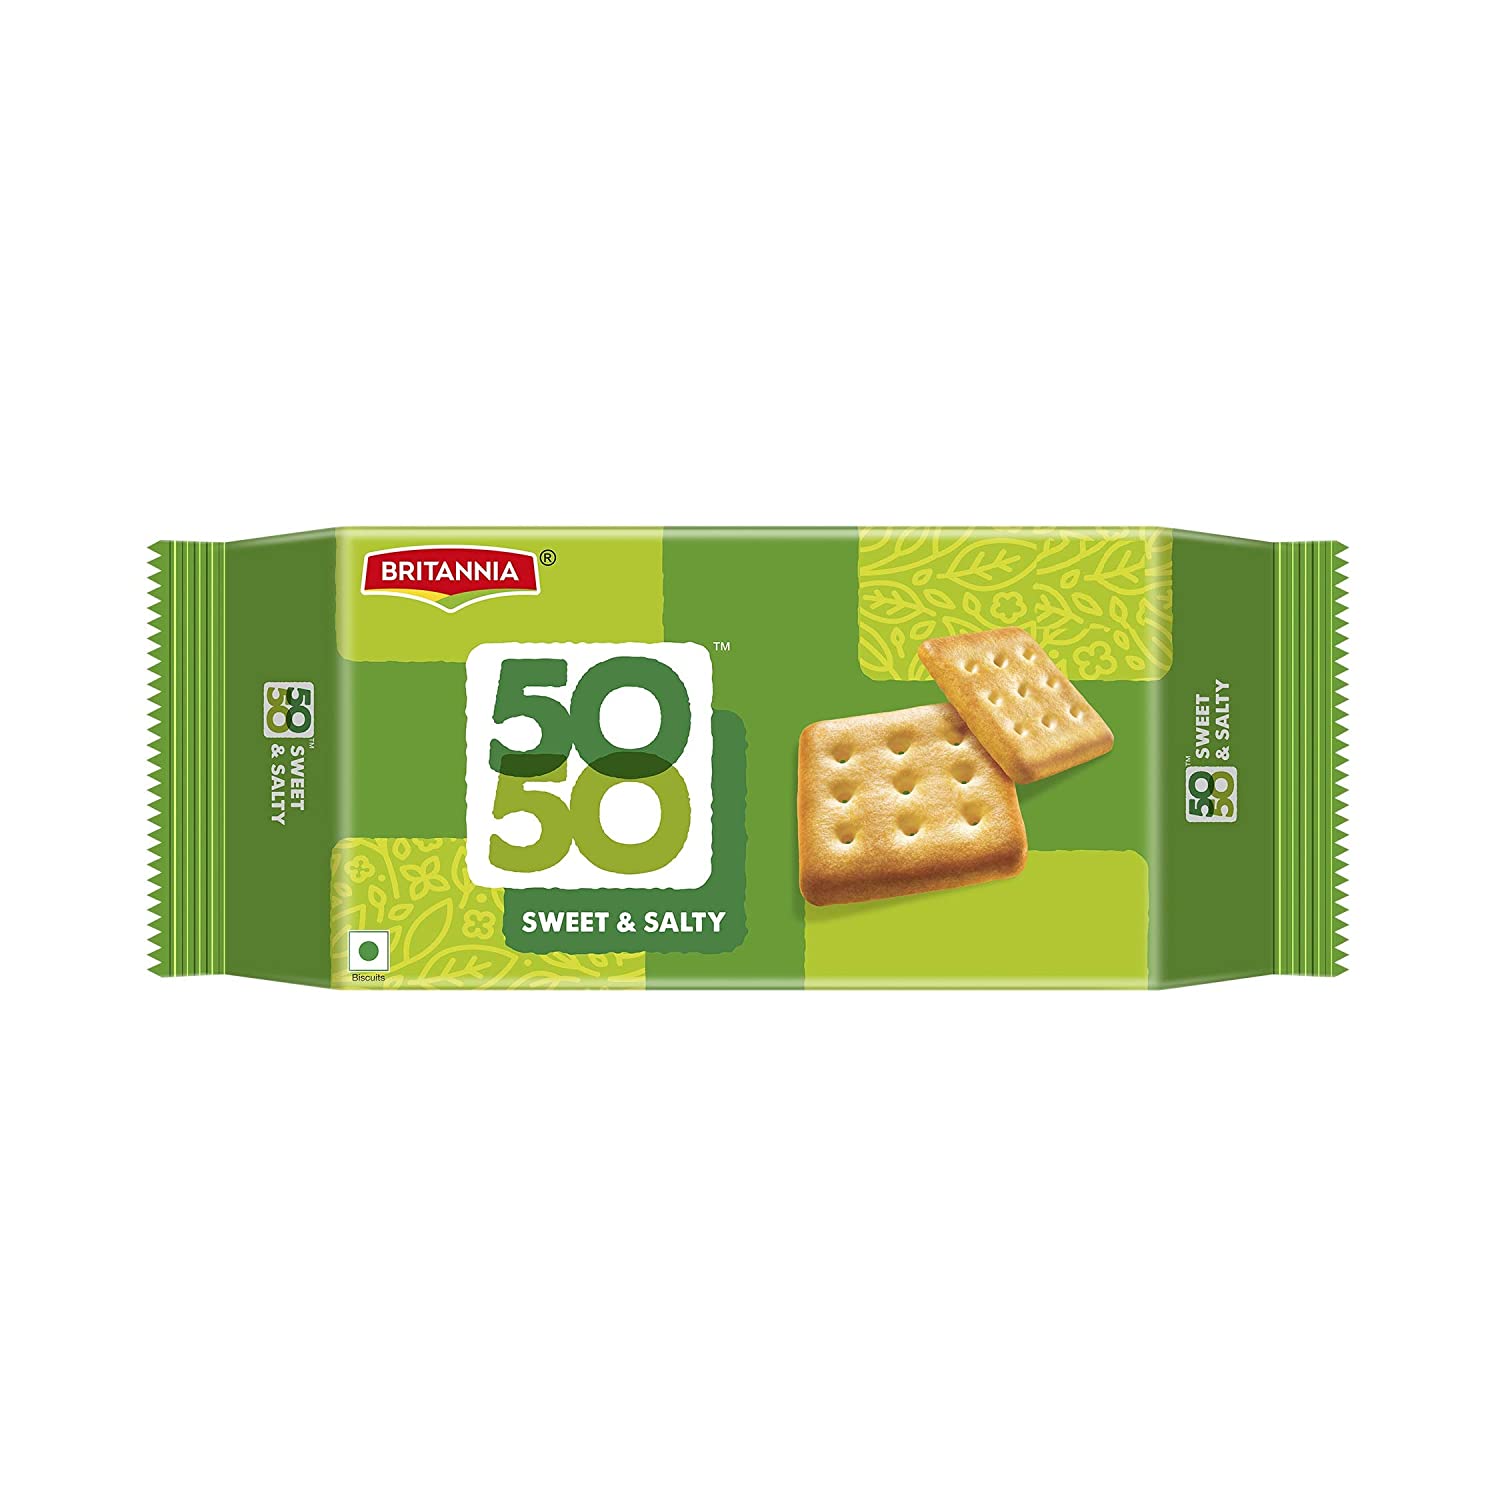 Britannia 50 50 Biscuit